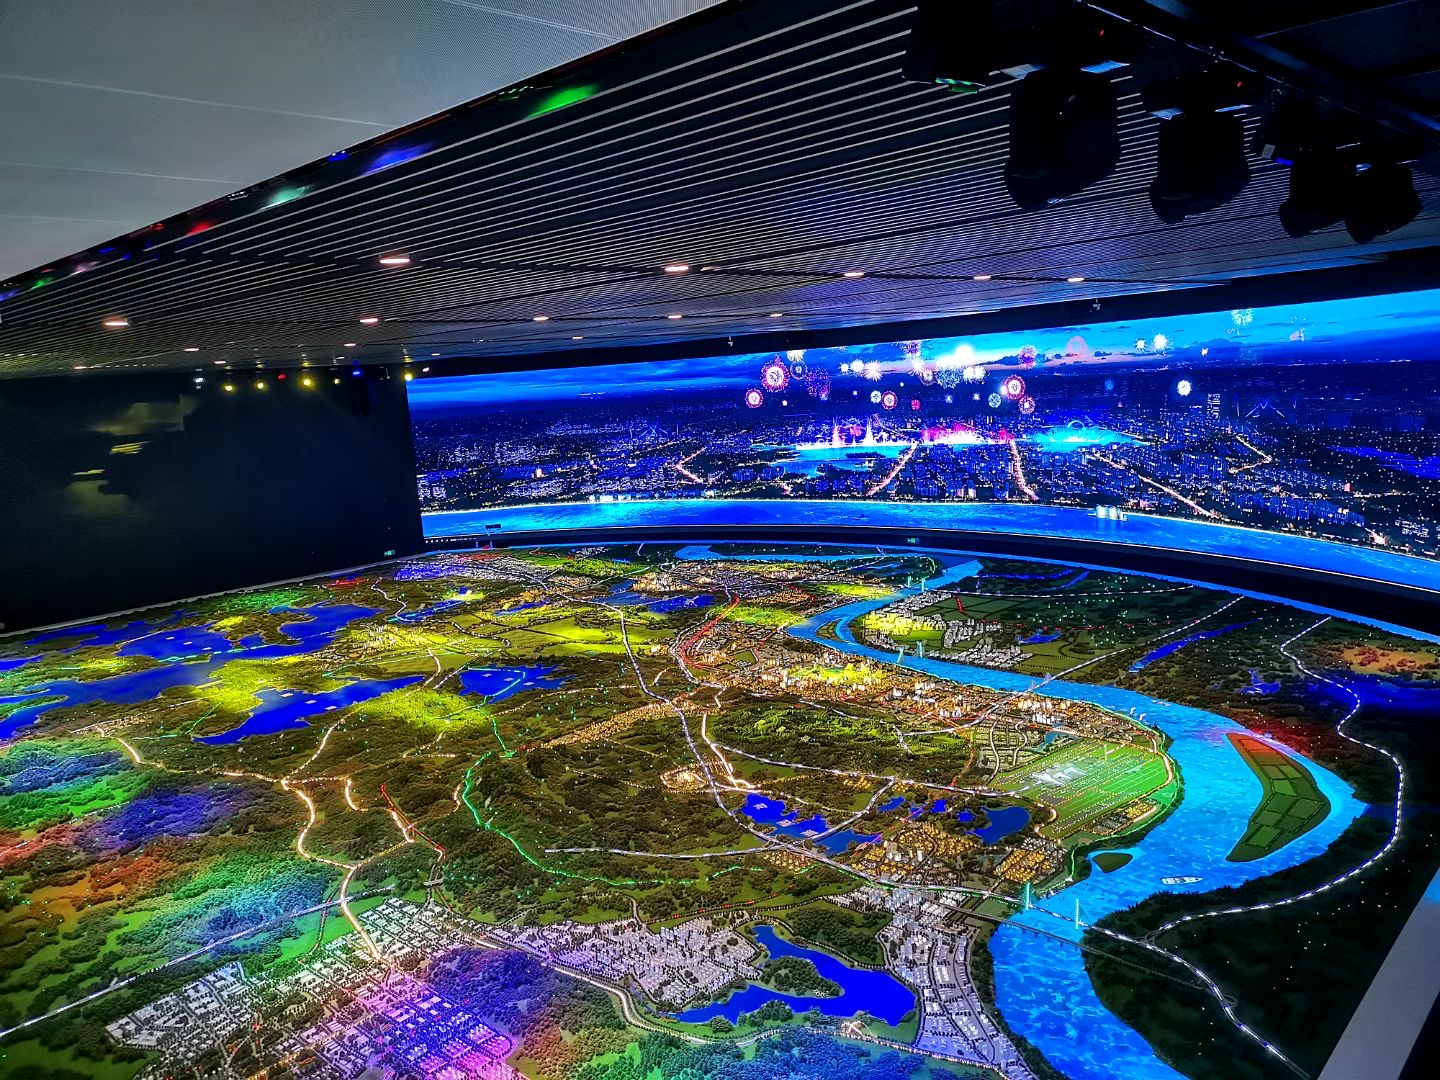 北京千境沙盘科技公司智慧城市沙盘模型制作要点讲解-北京千境沙盘模型公司大讲堂